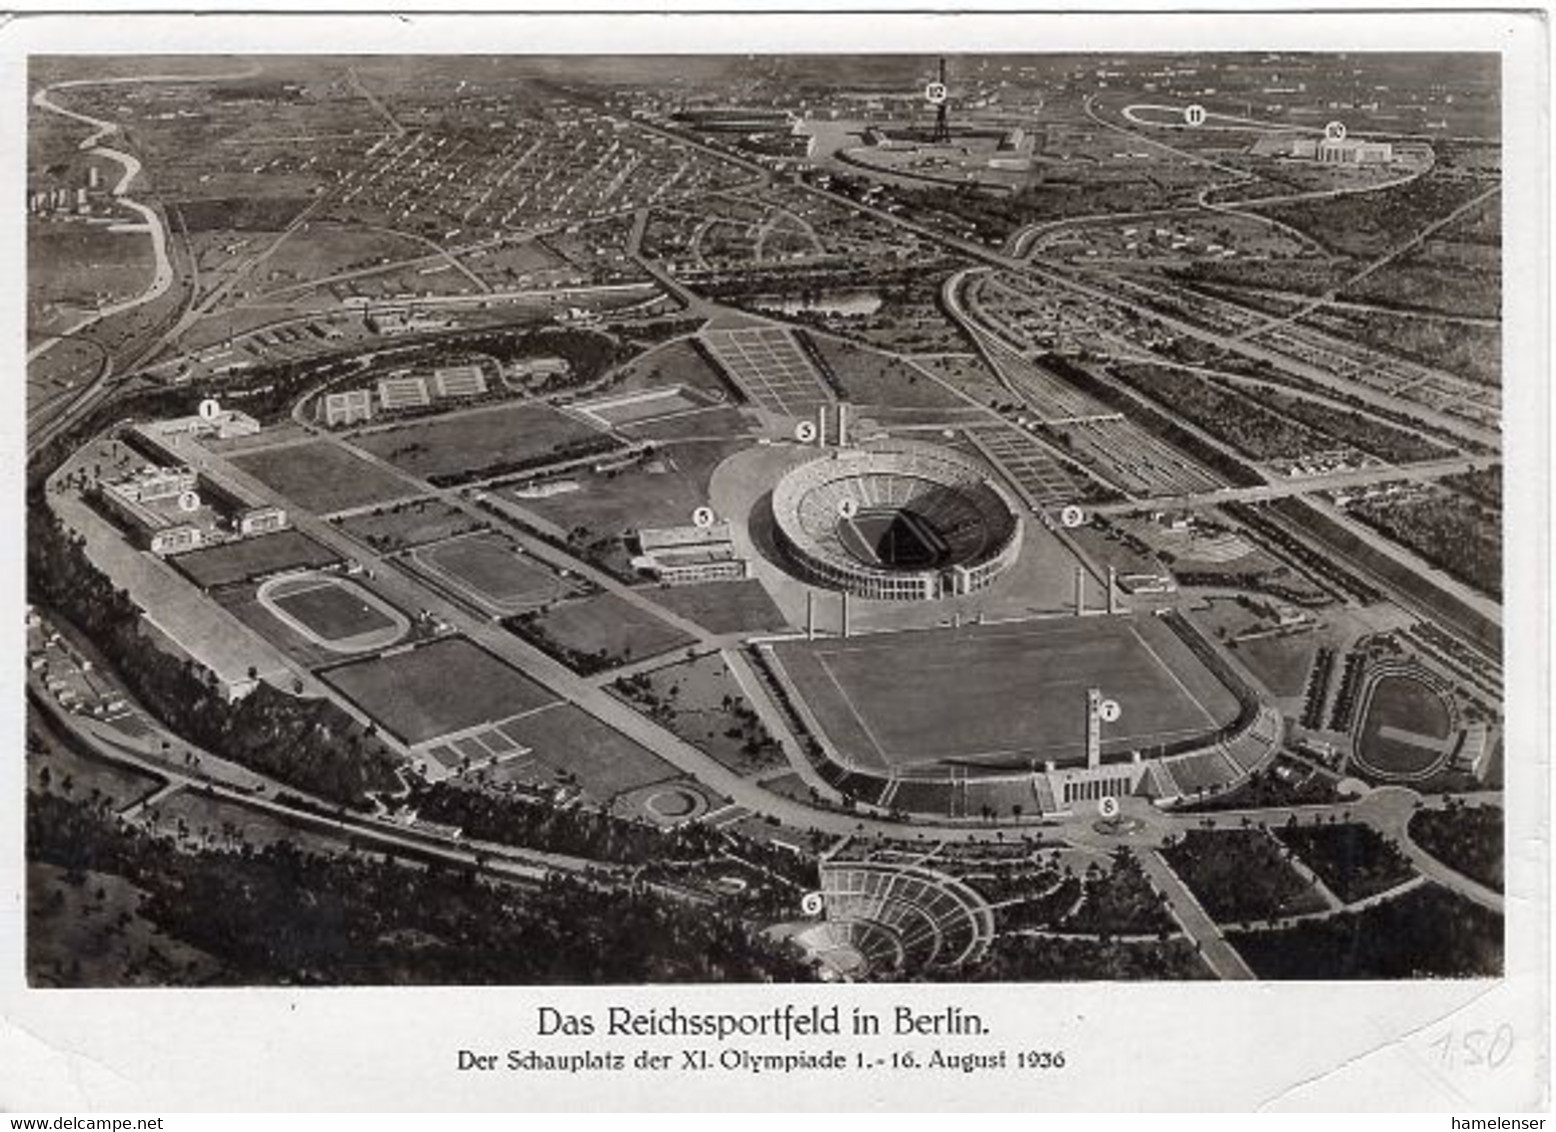 49824 - Deutsches Reich - 1936 - 6Pfg. Sommerolympiade A. Kte. M. MaschStpl. BERLIN - AUSSTELLUNG DEUTSCHLAND -> N'berg - Ete 1936: Berlin